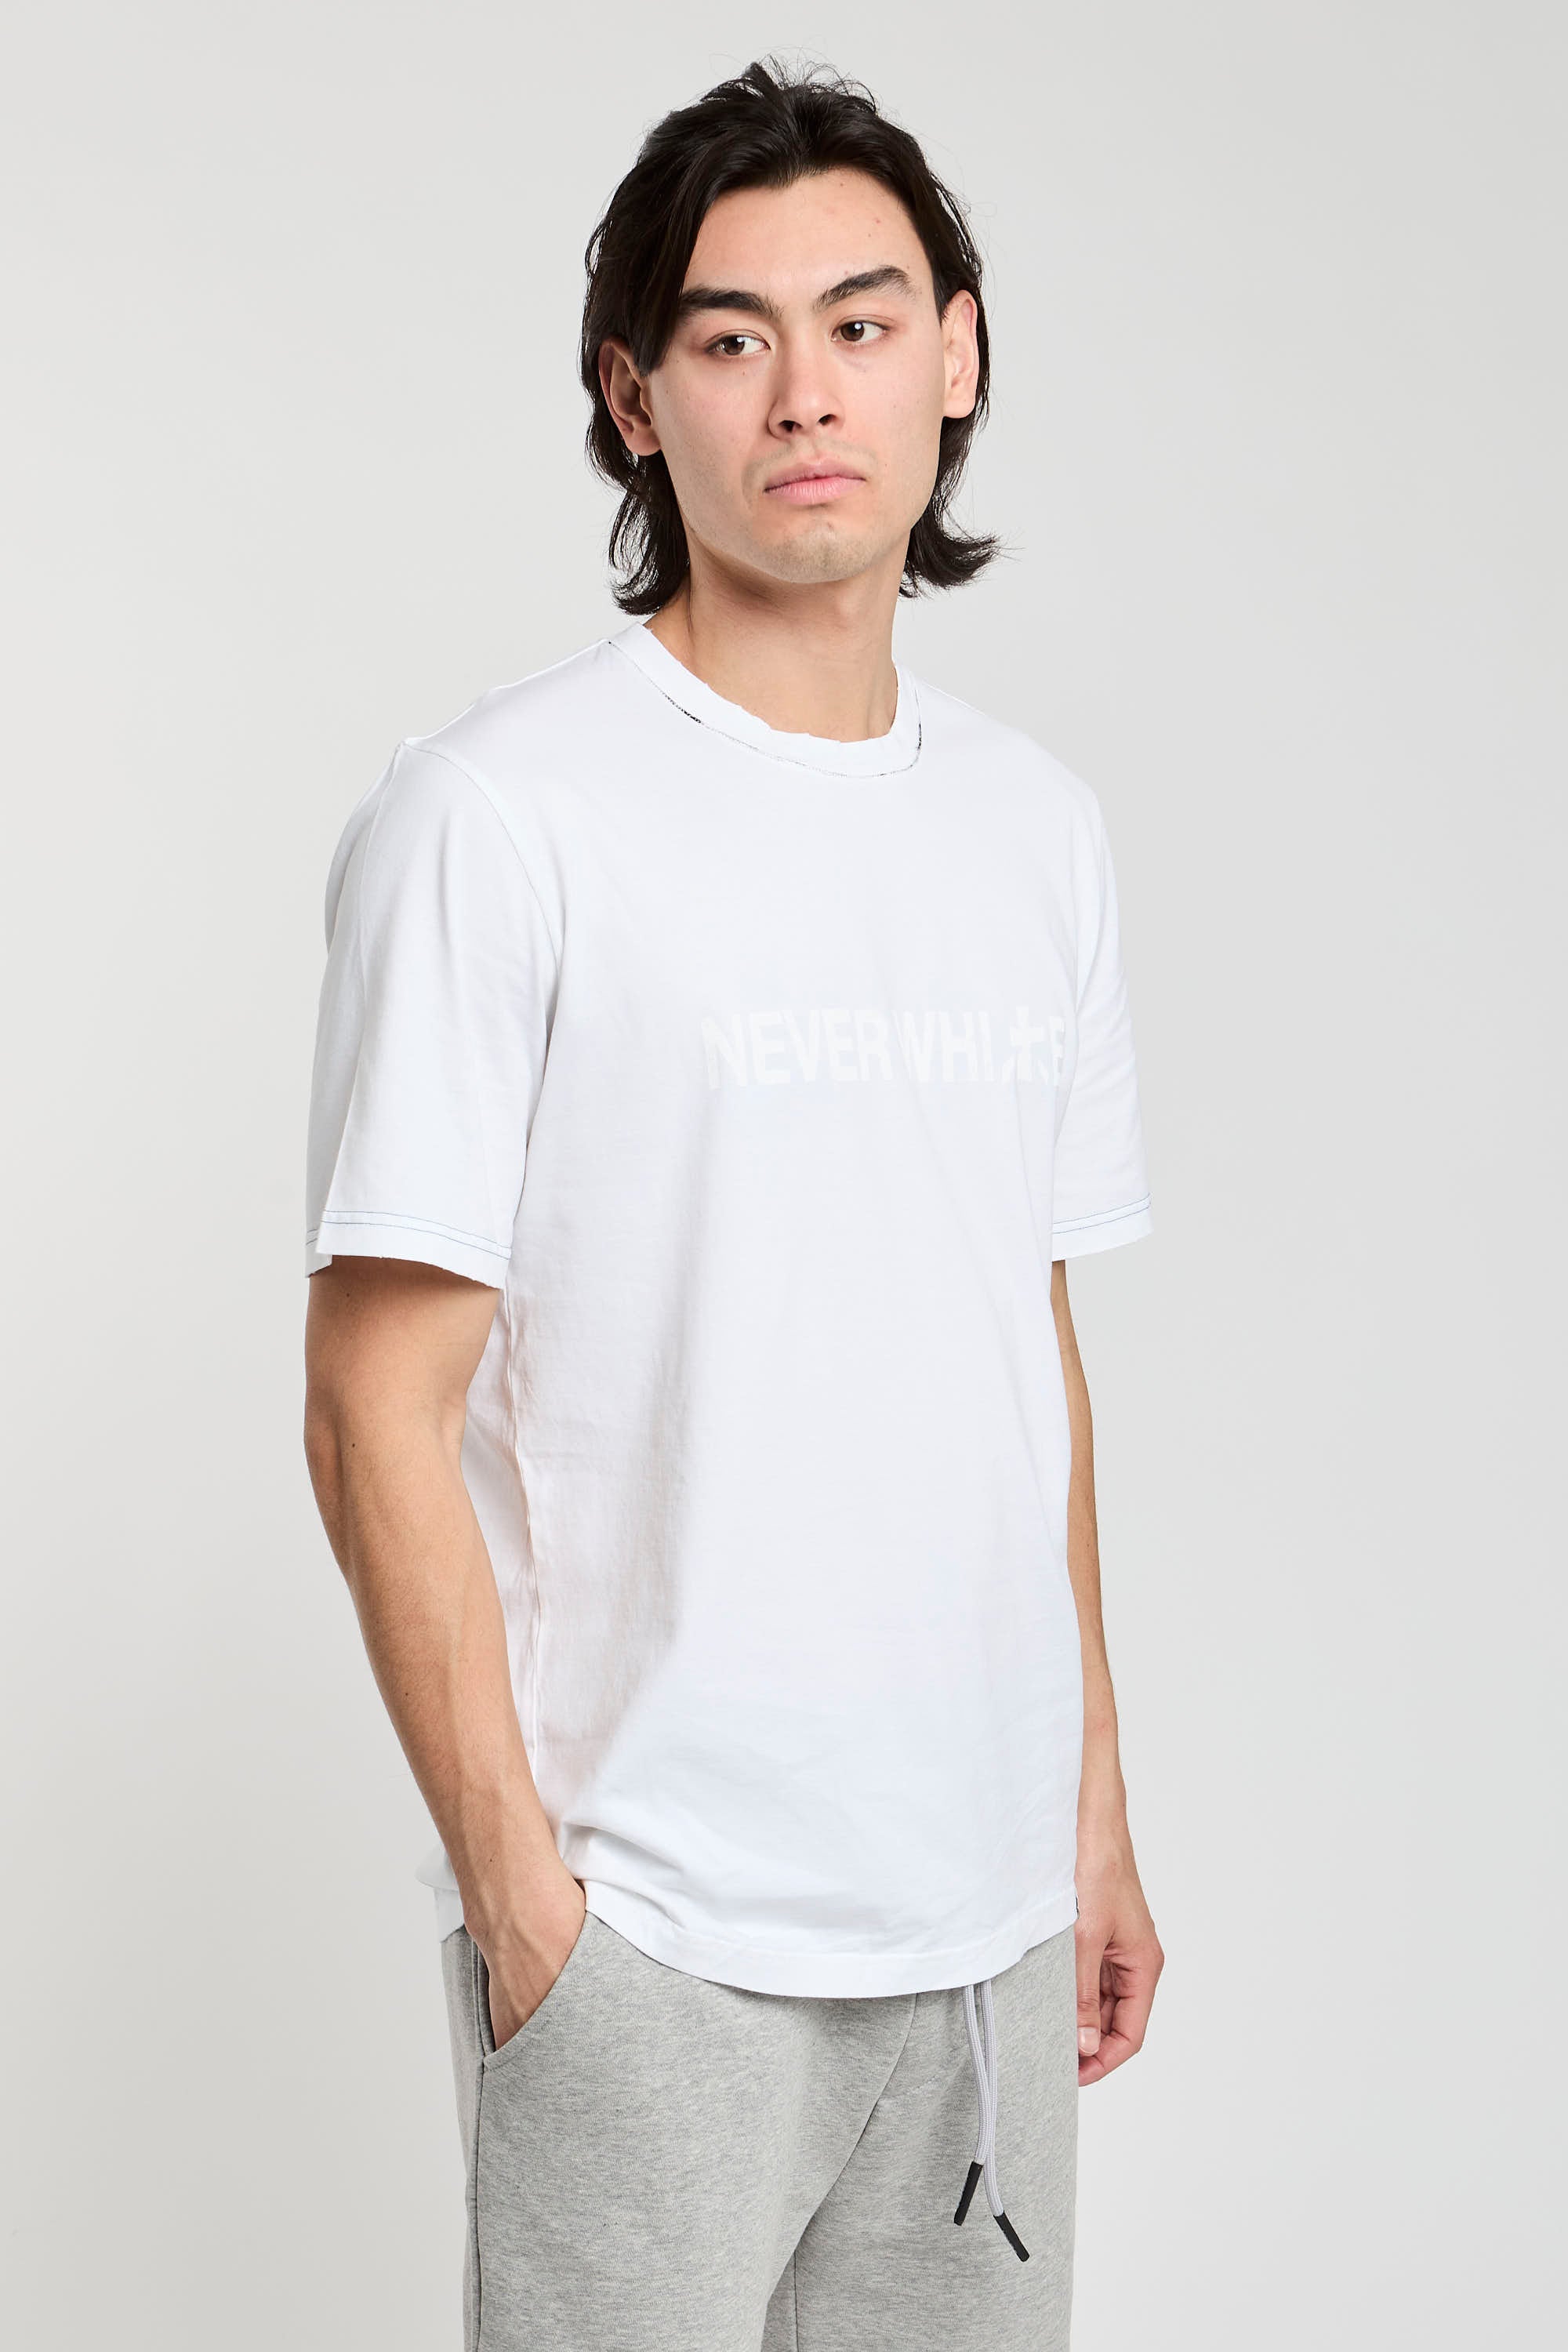 Premiata T-Shirt 'Never White' aus weißer Baumwolle-6